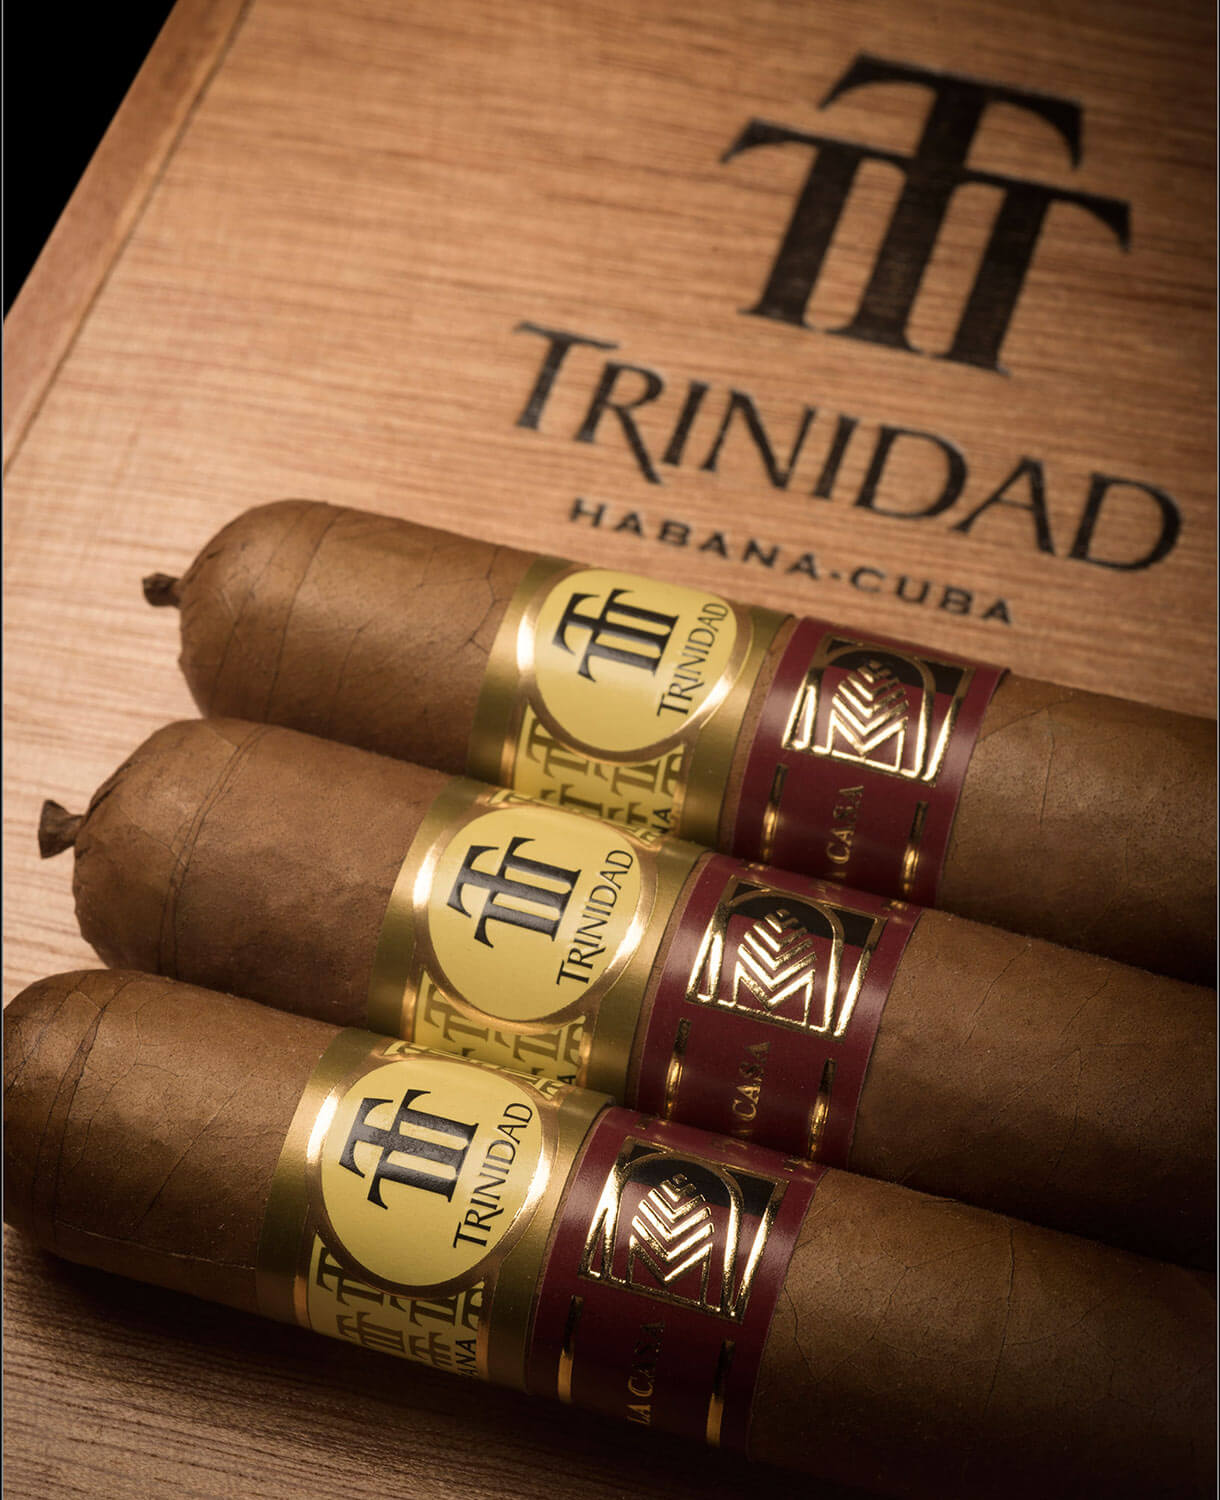 TRINIDAD LA TROVA "LCDH" 12 Cigars